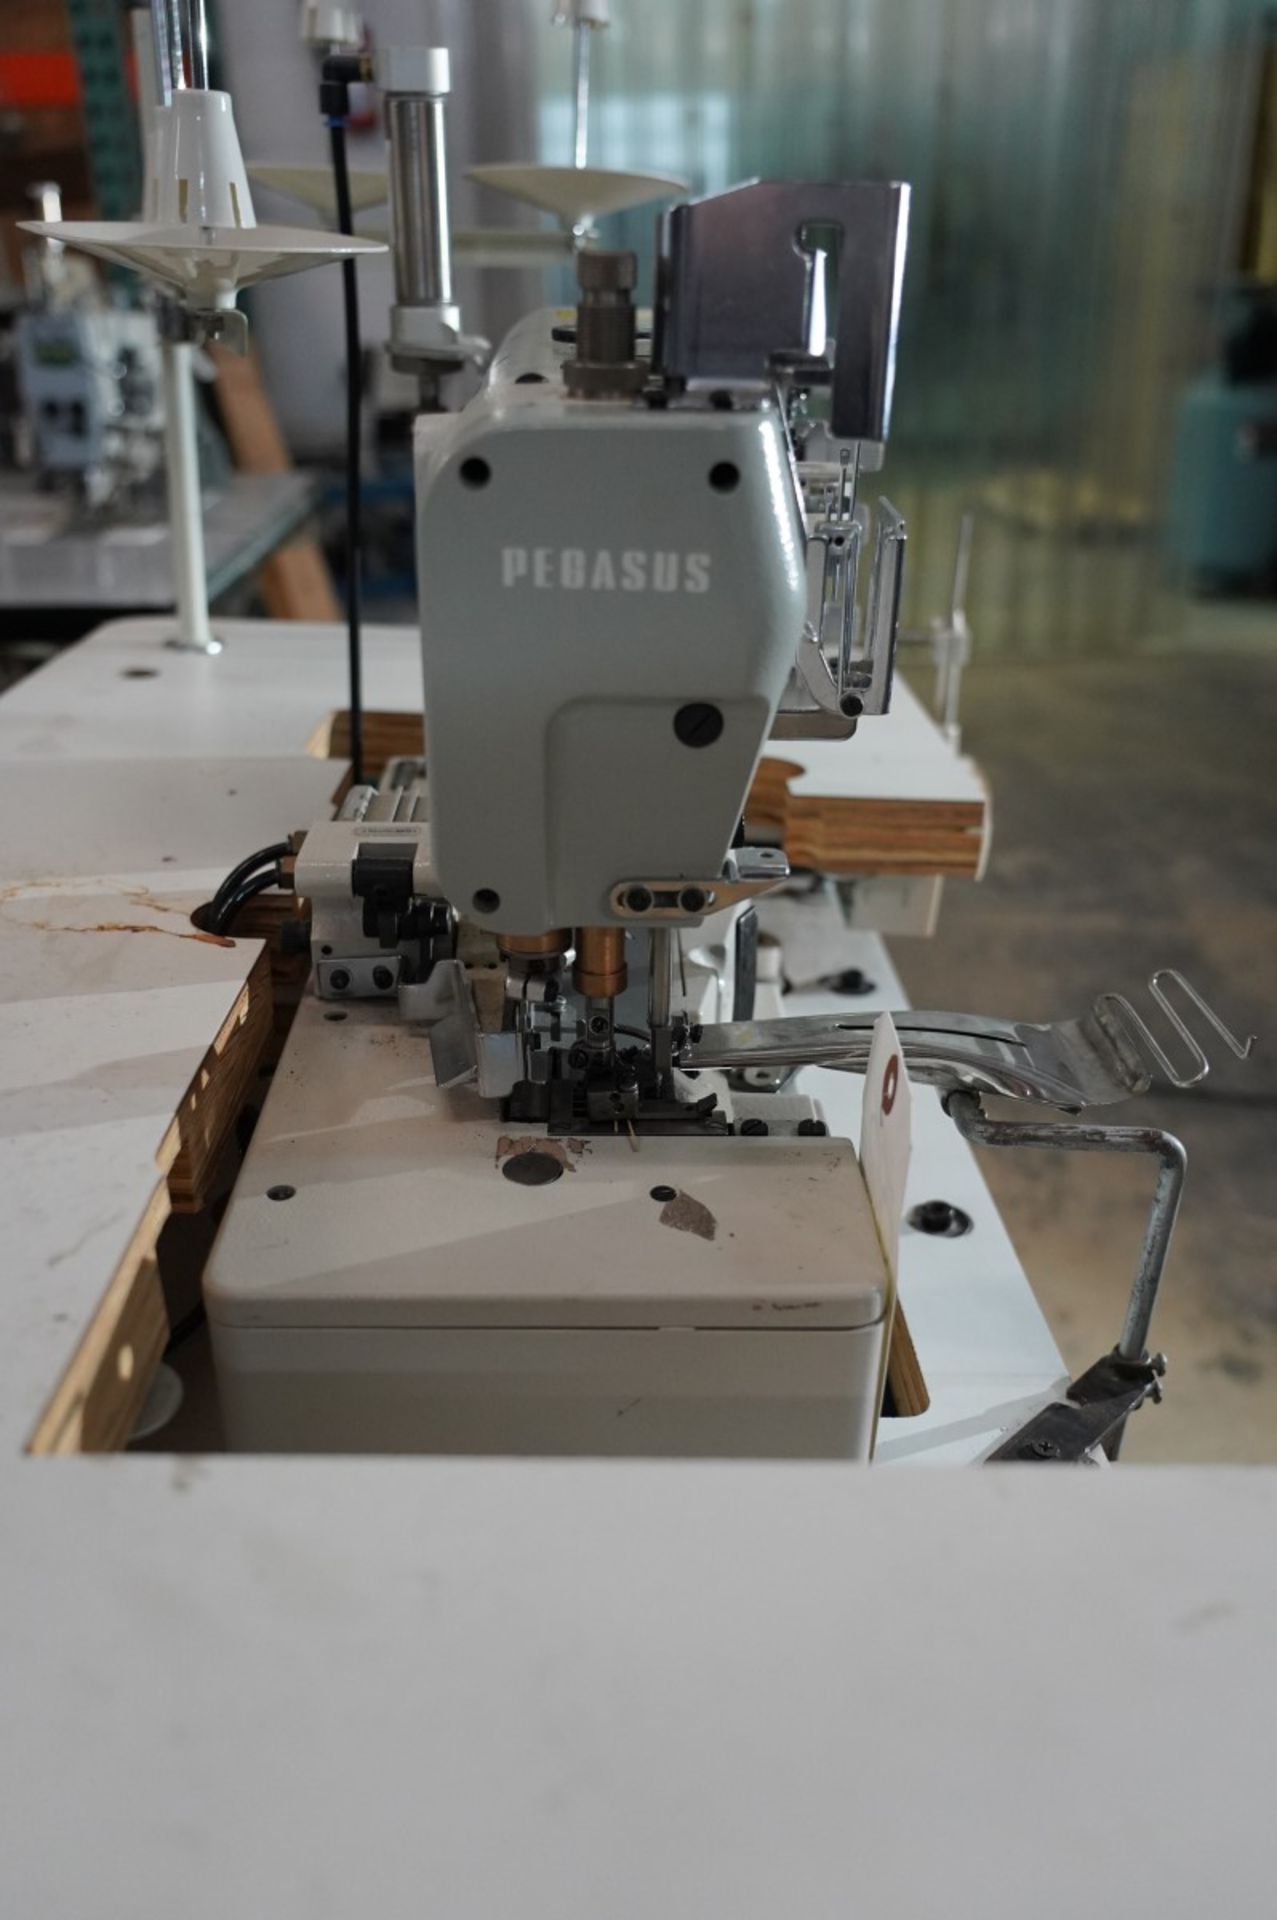 Pegasus Coverstitch Sewing Machine Model CW500N - Type -CW562N-01GB, Spec. 364 S/N 548682, Adjustab - Image 5 of 10